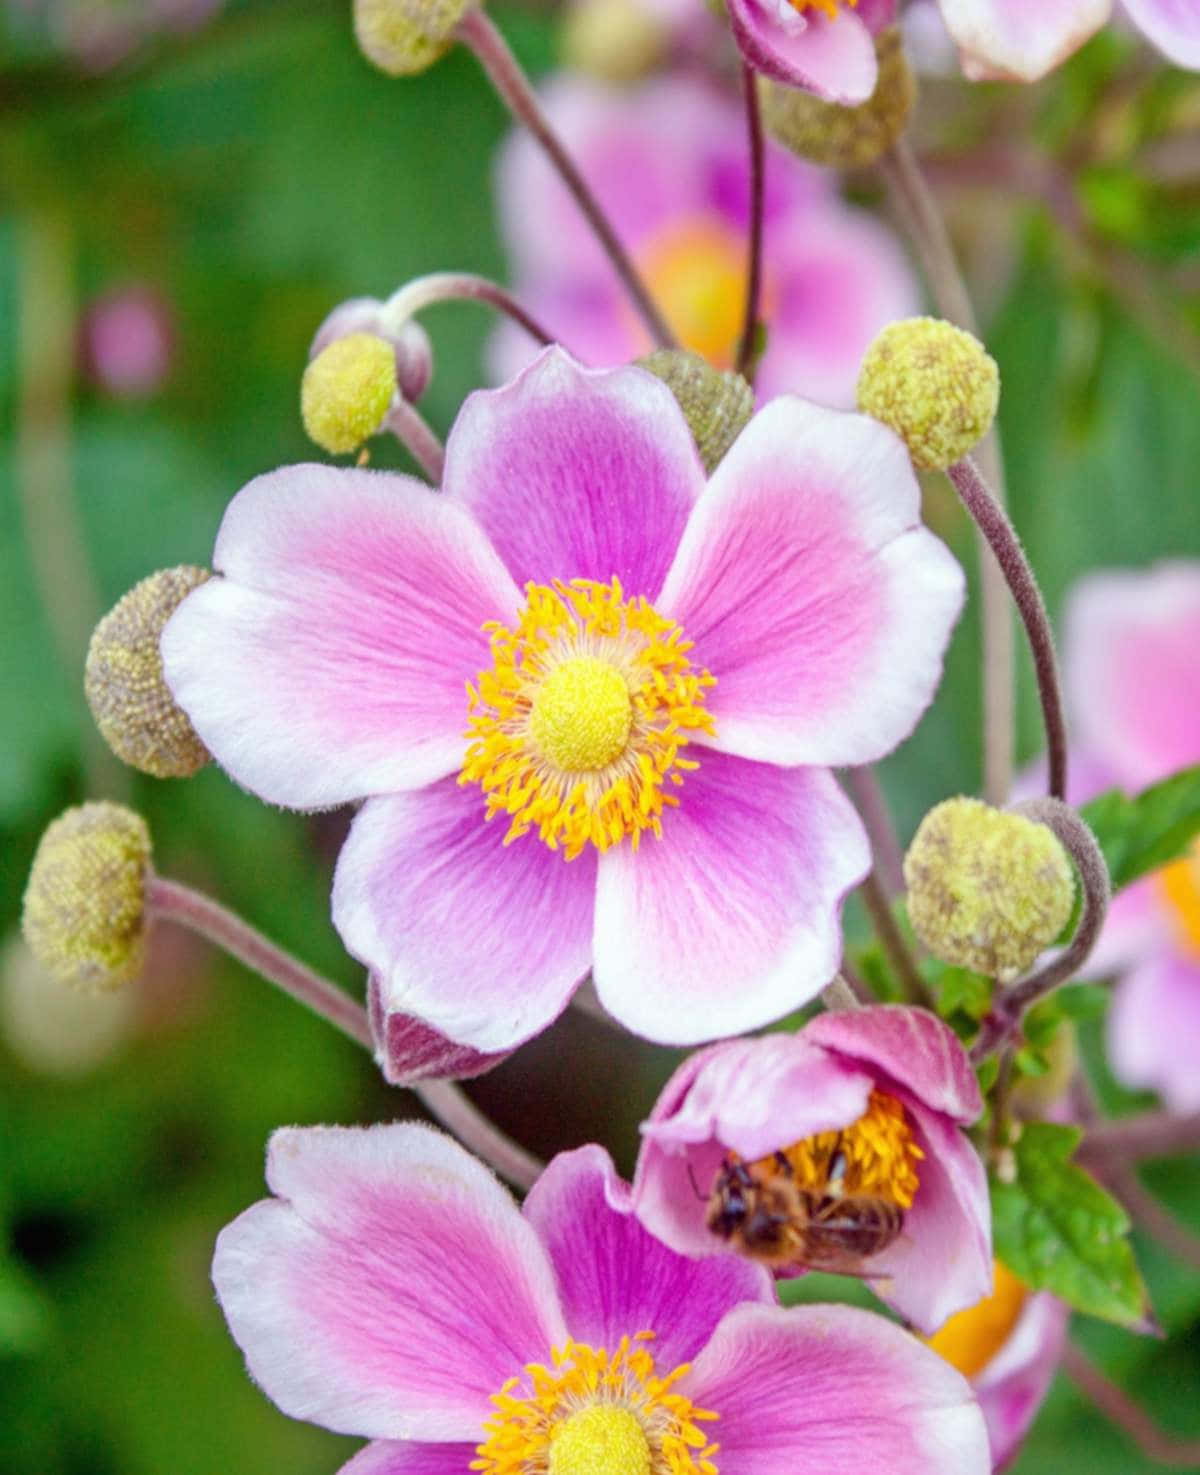 Ensmuk Anemone Blomst, Der Blomstrer I En Pastelfarvet Have.